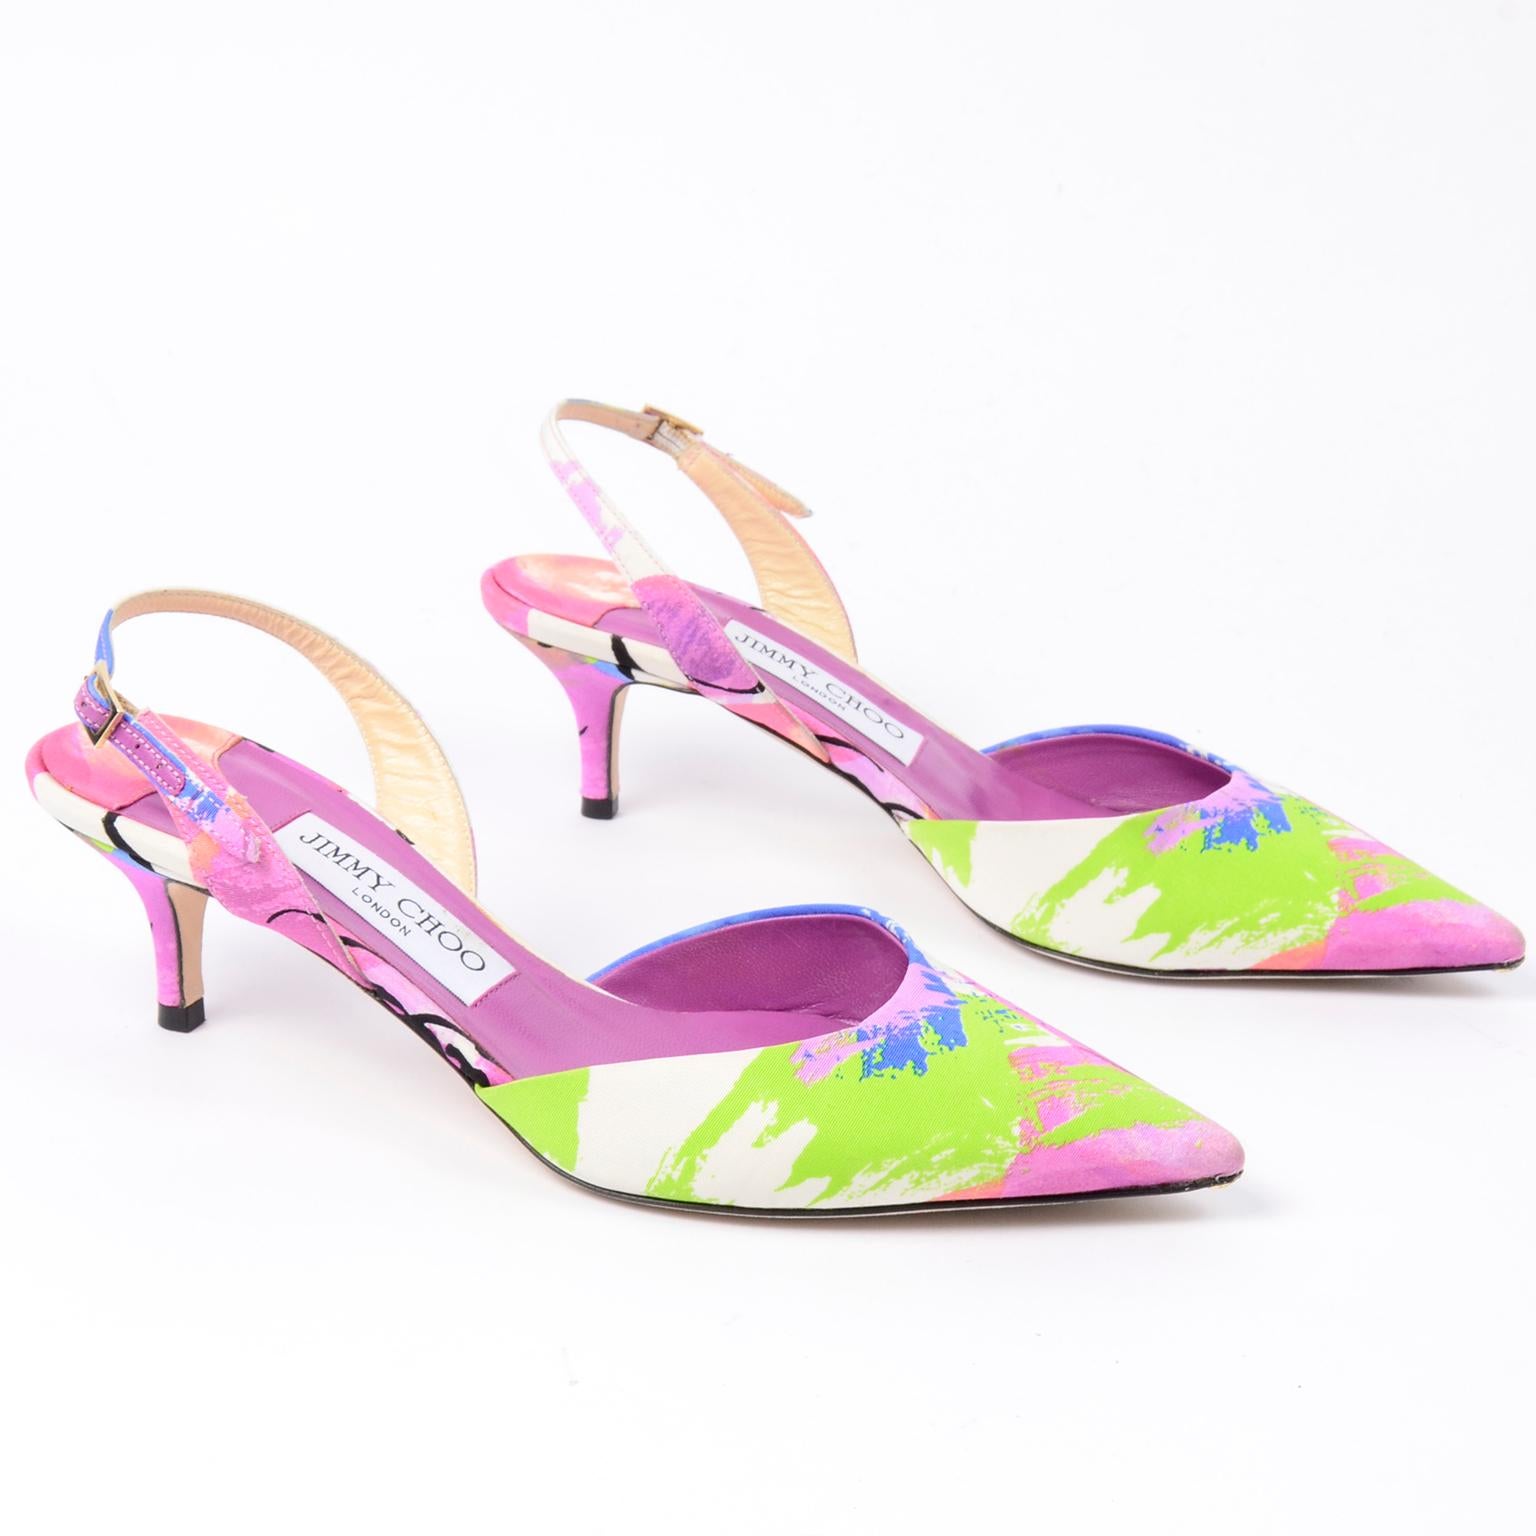  Jimmy Choo - Chaussures à fleurs roses - Talons aiguilles Pour femmes 